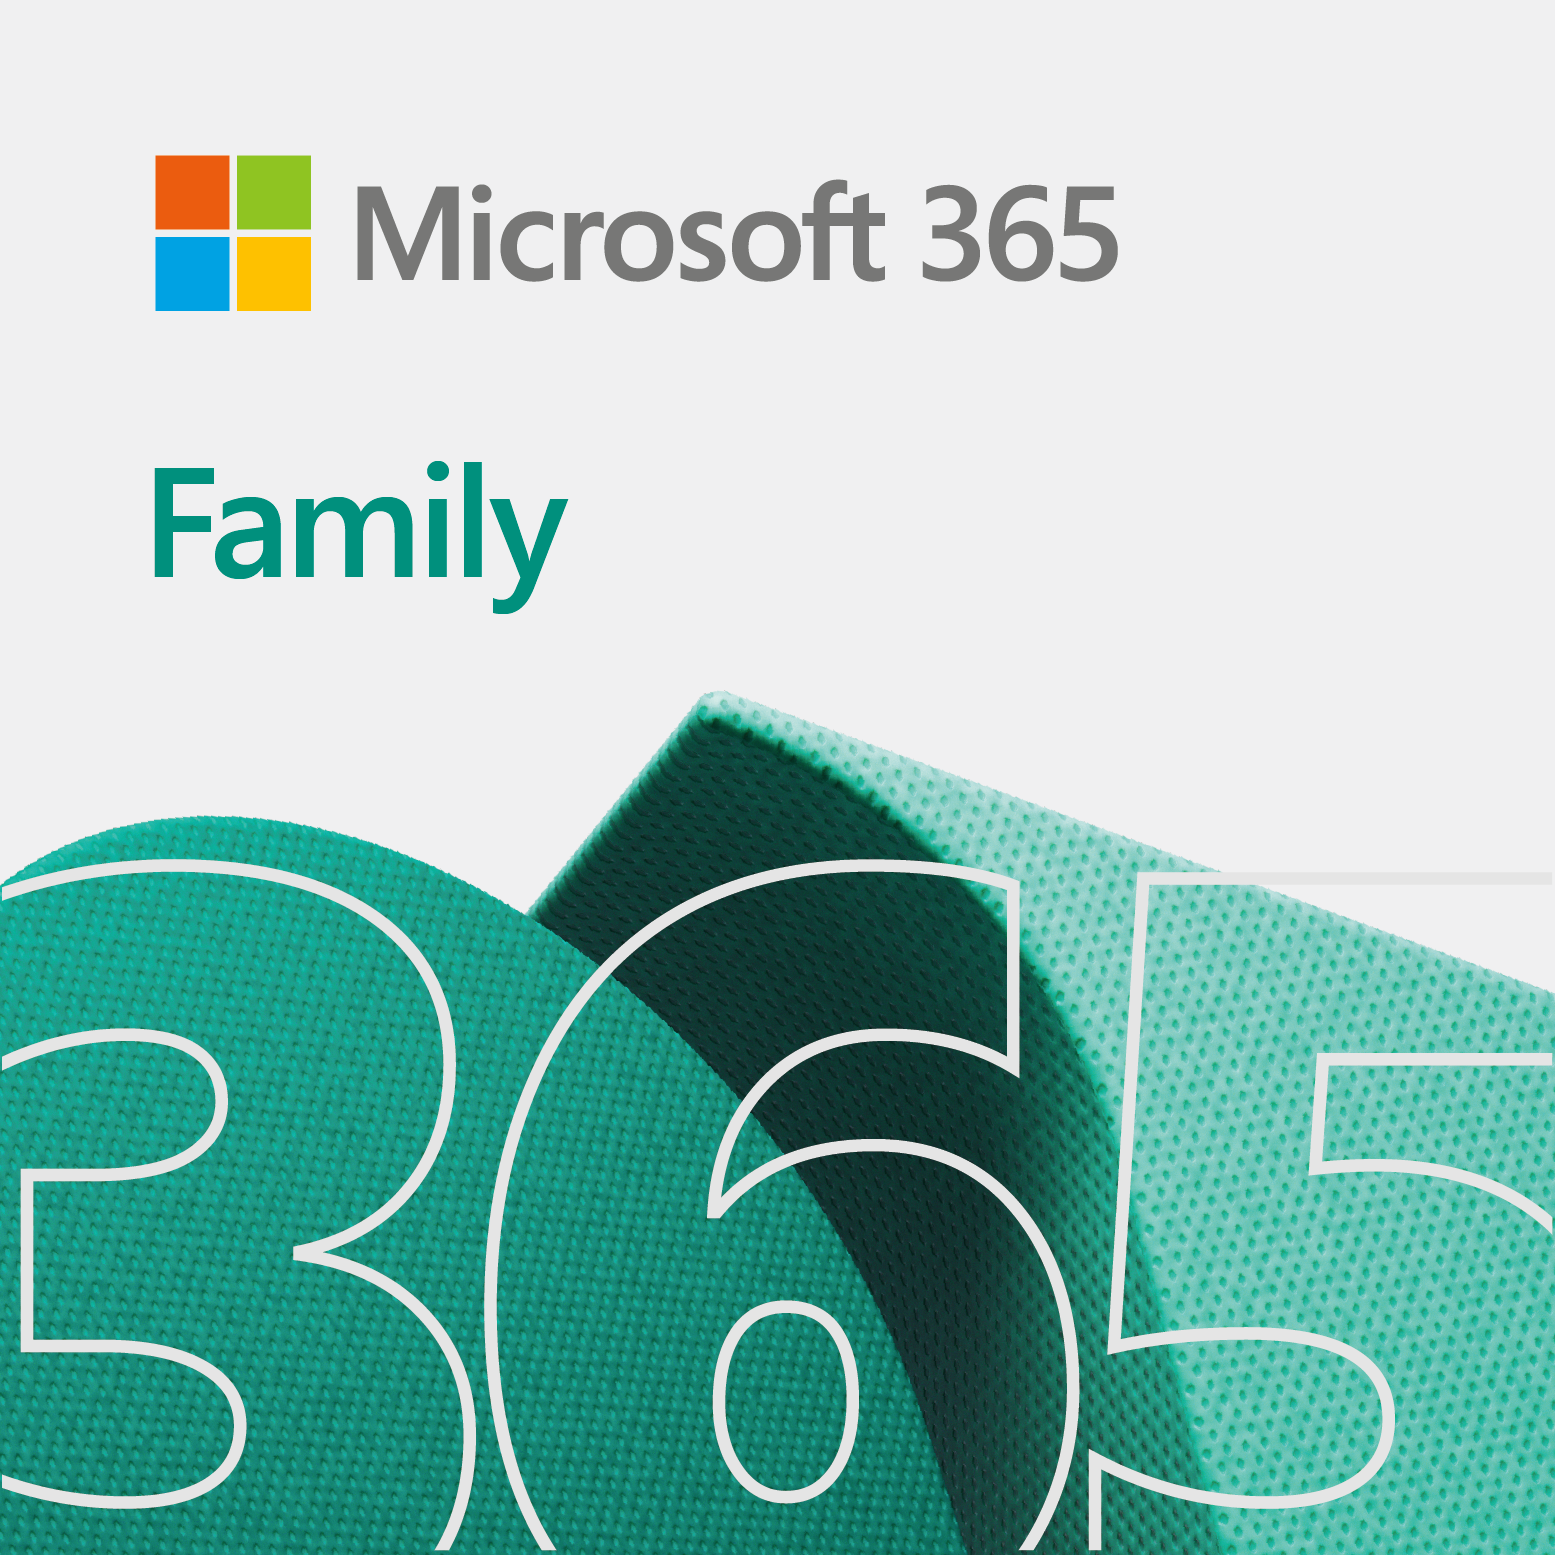 【最大6人で使える】Microsoft 365 Family / Word / Excel / PowerPoint / Outlook / Access / Publisher / 6TB OneDrive / Windows / Mac / iPad / iPhone / Android